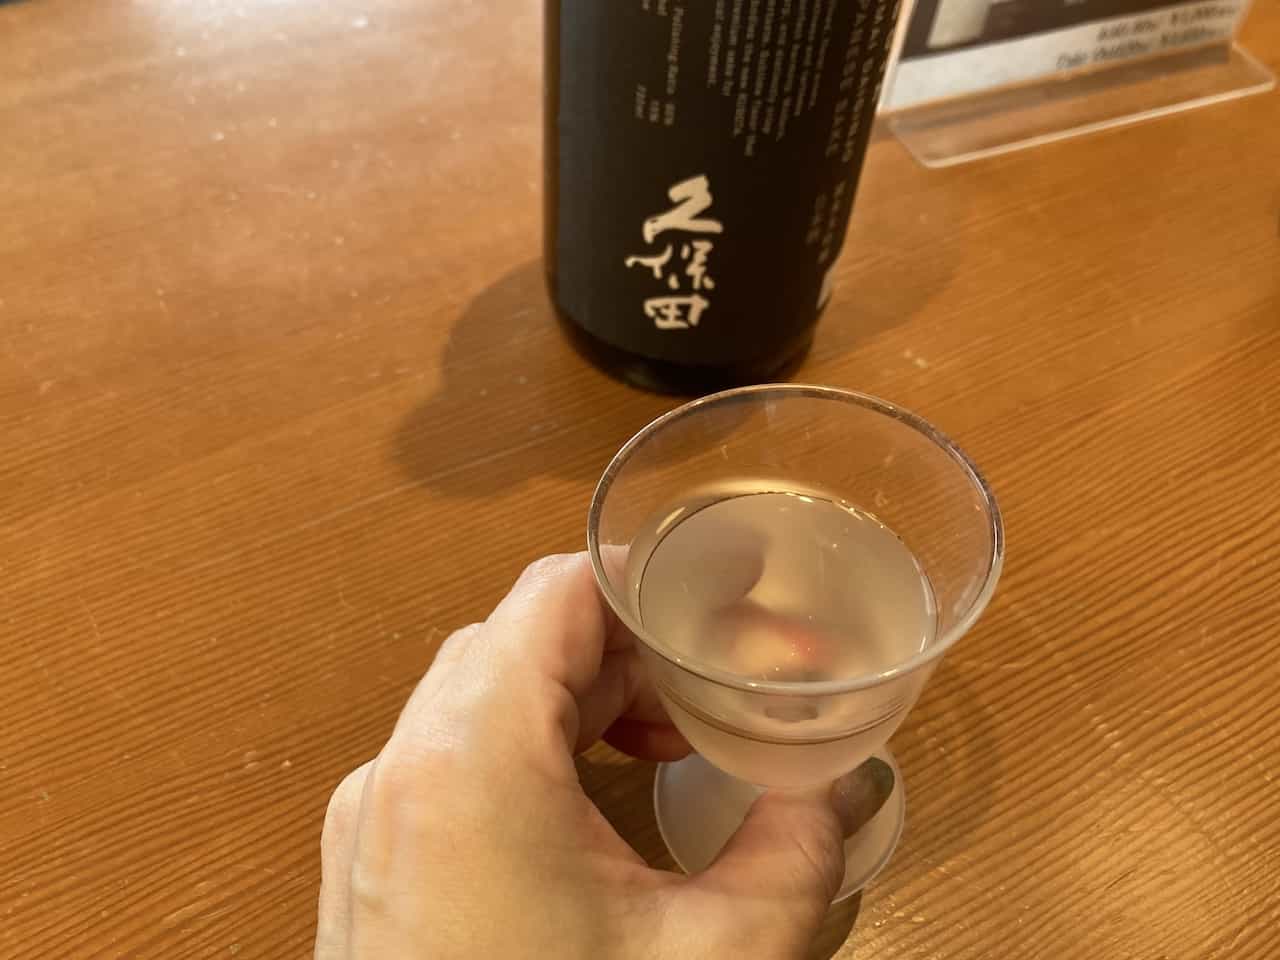 朝日酒造・久保田 純米大吟醸の試飲